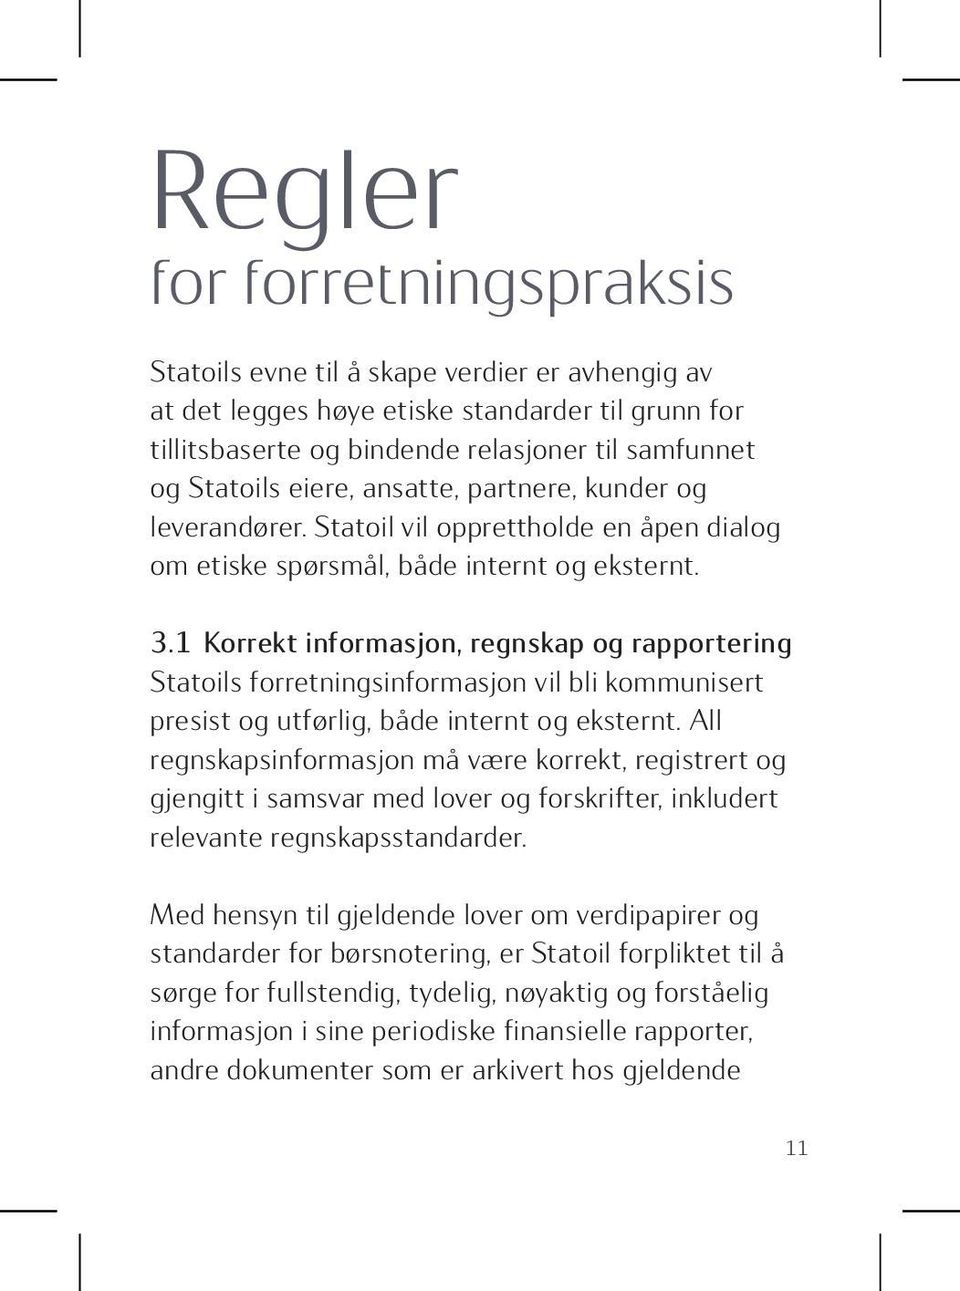 1 Korrekt informasjon, regnskap og rapportering Statoils forretningsinformasjon vil bli kommunisert presist og utførlig, både internt og eksternt.